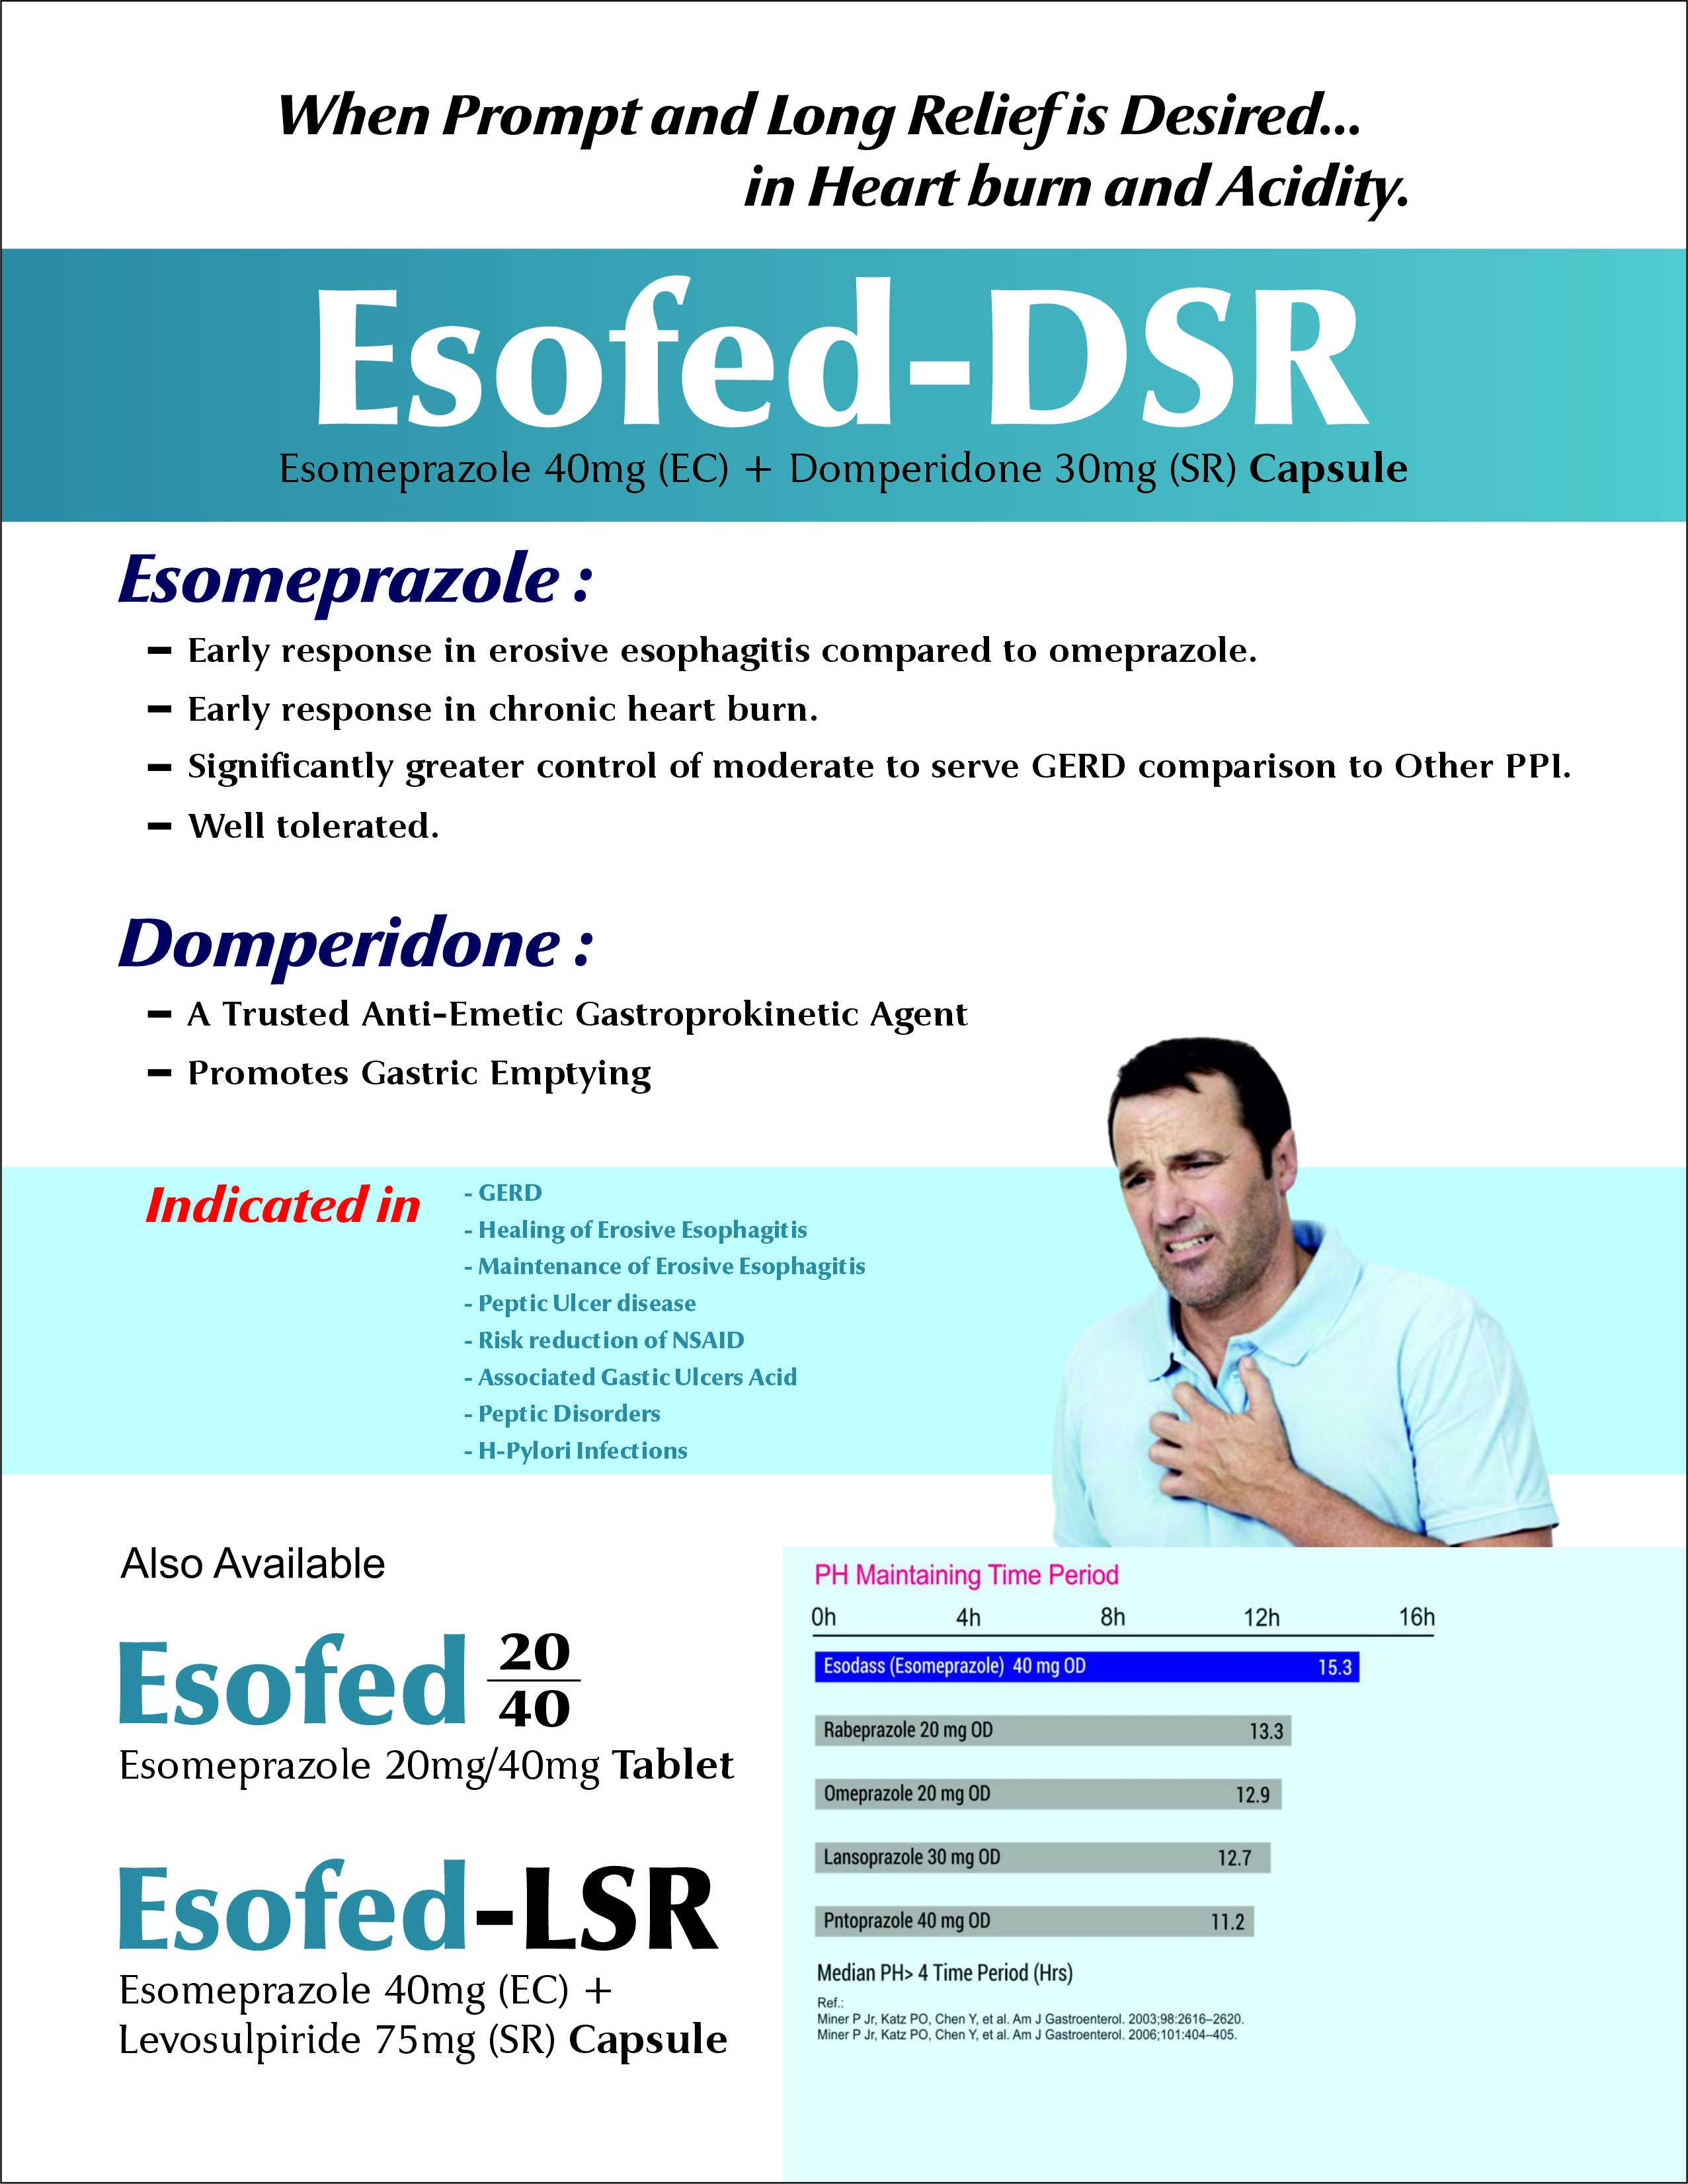 ESOFED-DSR